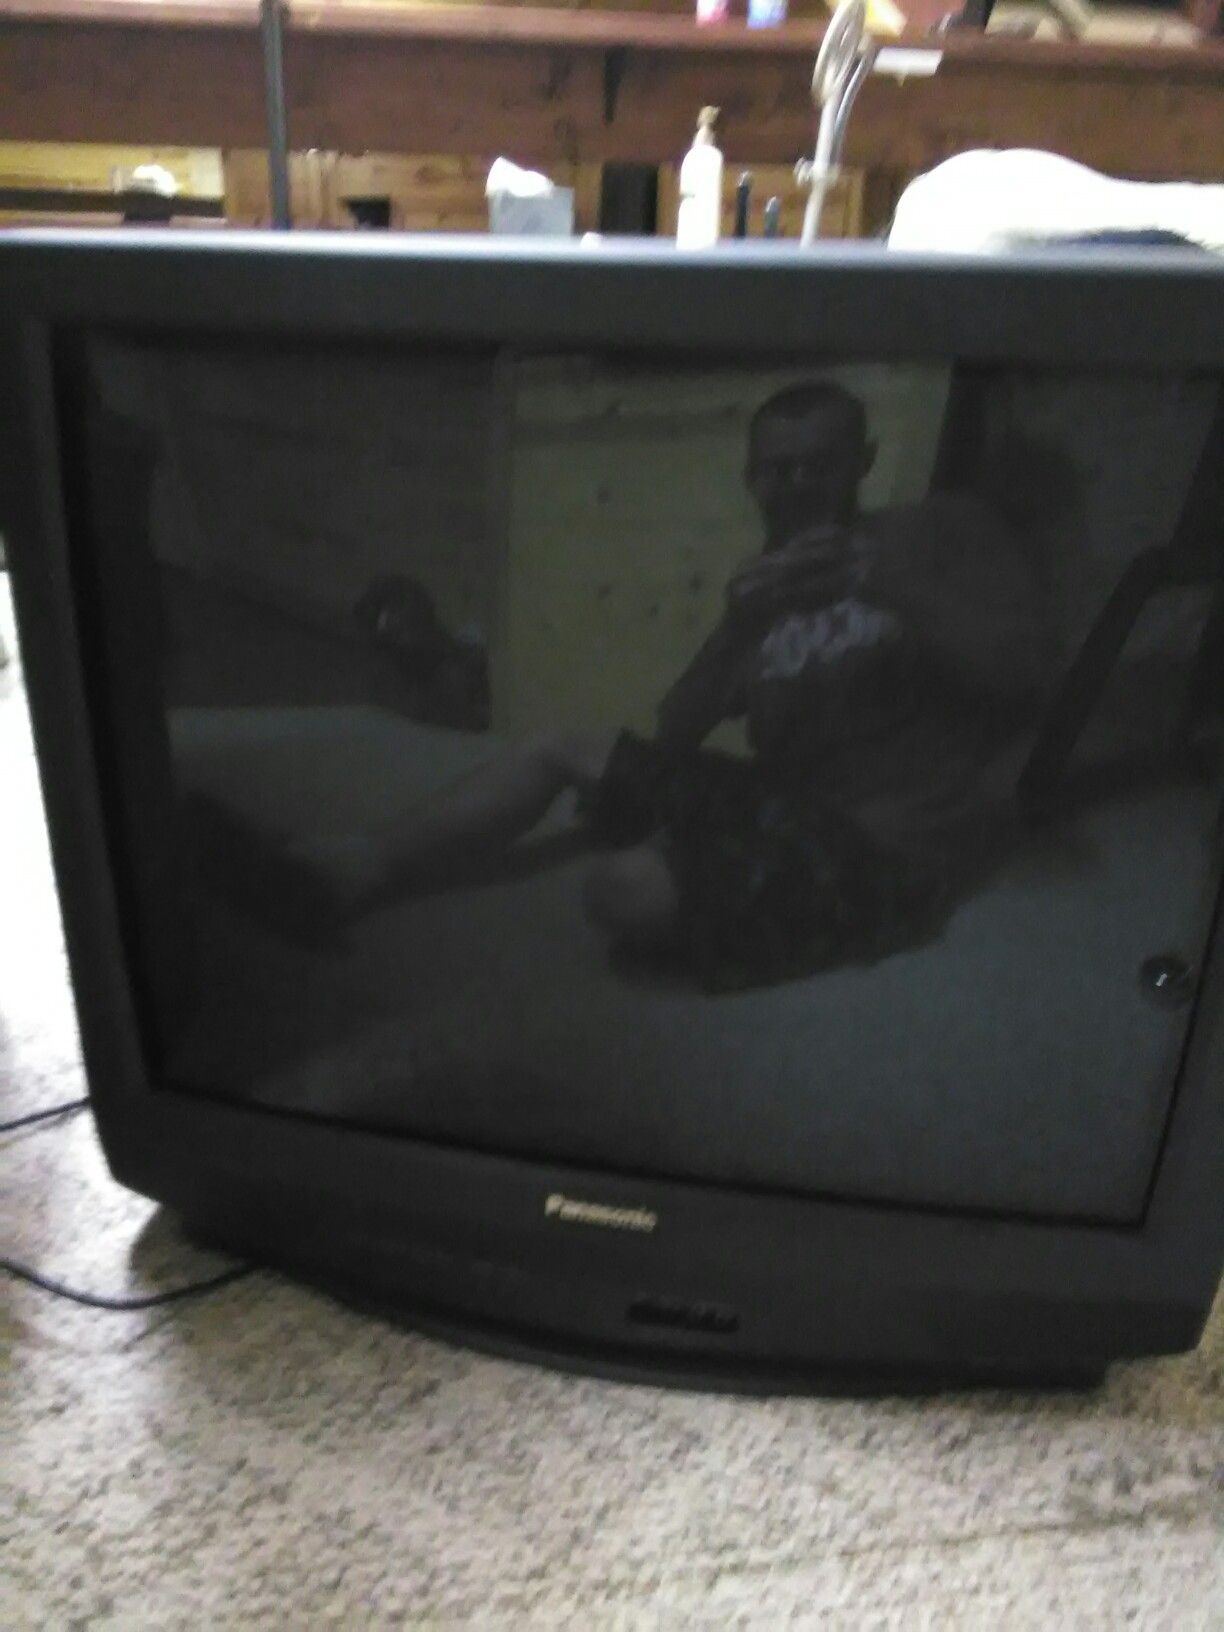 Panasonic 30 inch tv